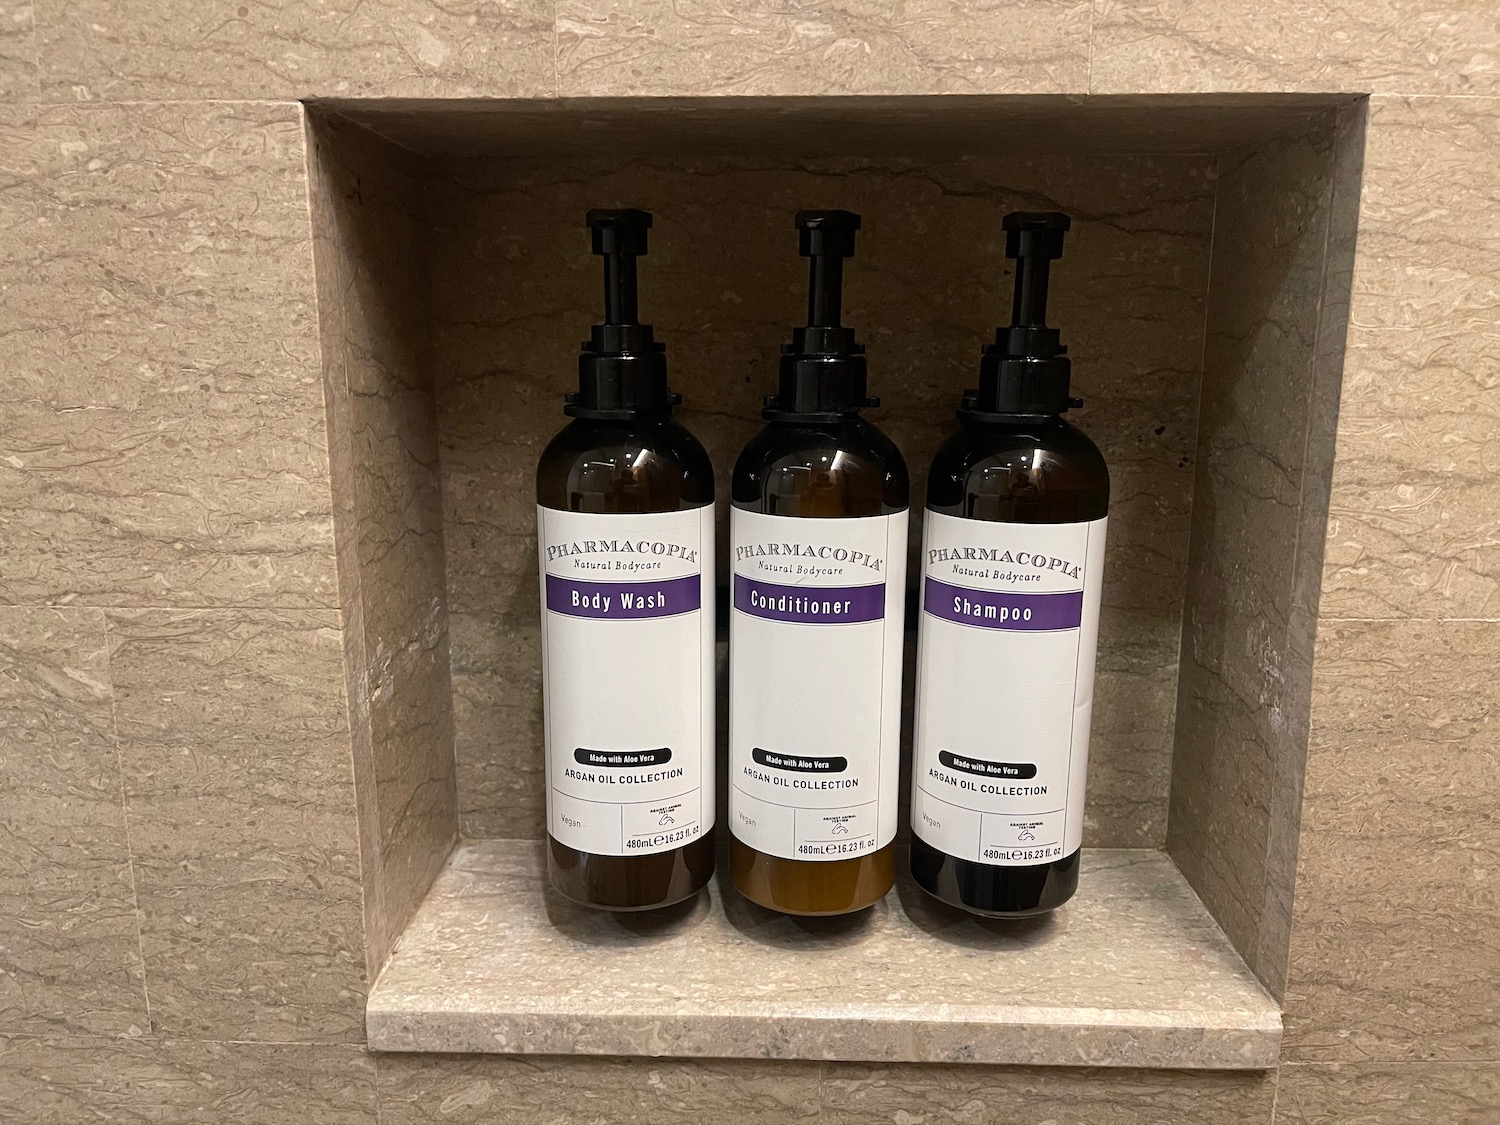 bottles in a shelf on a wall